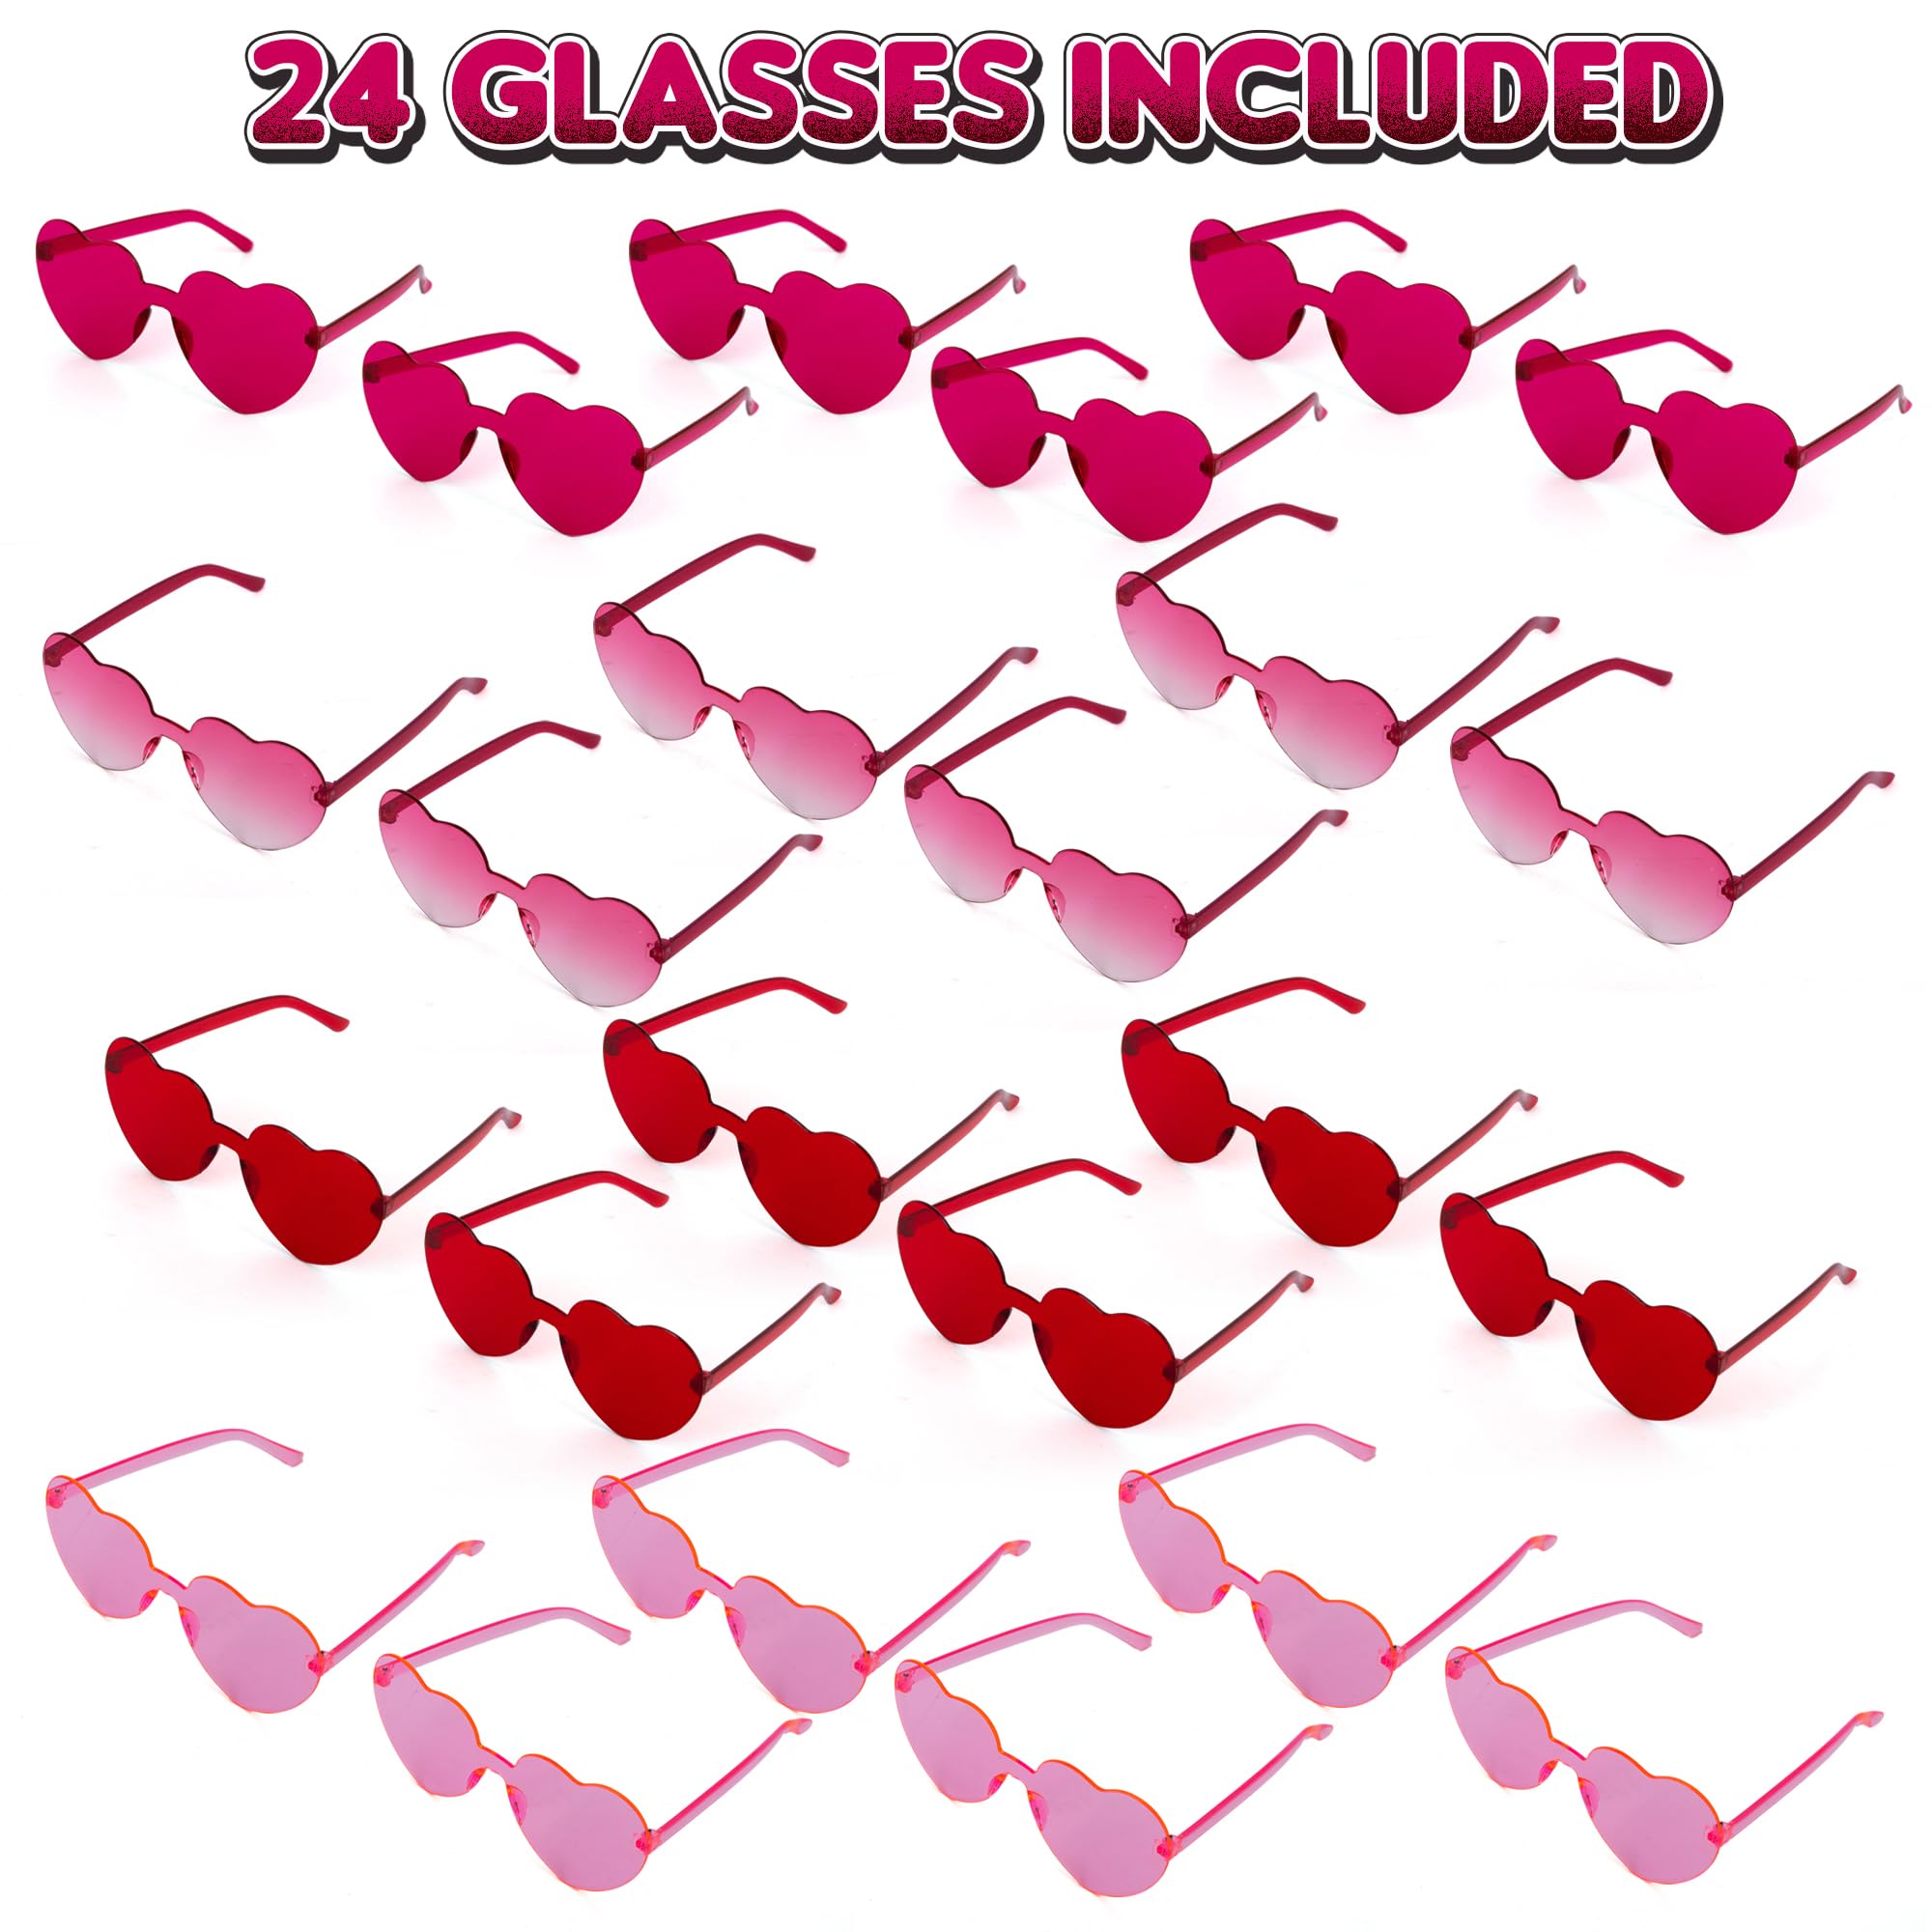 Heart Glasses Pack - 24 Heart Glasses (Bulk) - Valentines Heart Shaped Glasses in 4 Colors